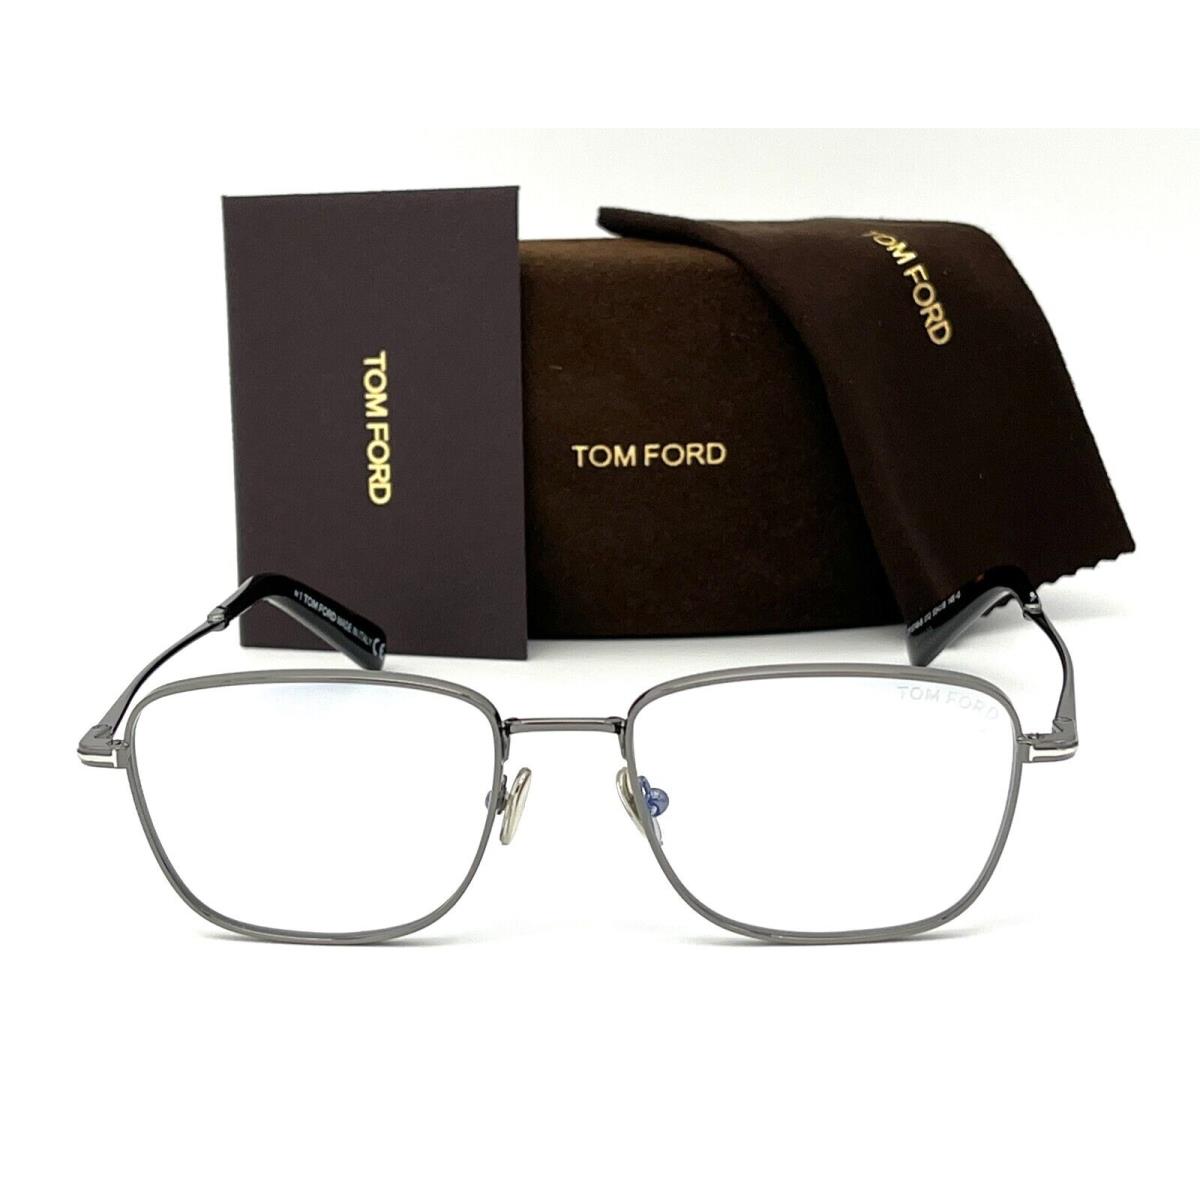 Tom Ford eyeglasses  - Dark Ruthenium Frame, Blue Block Lens 0